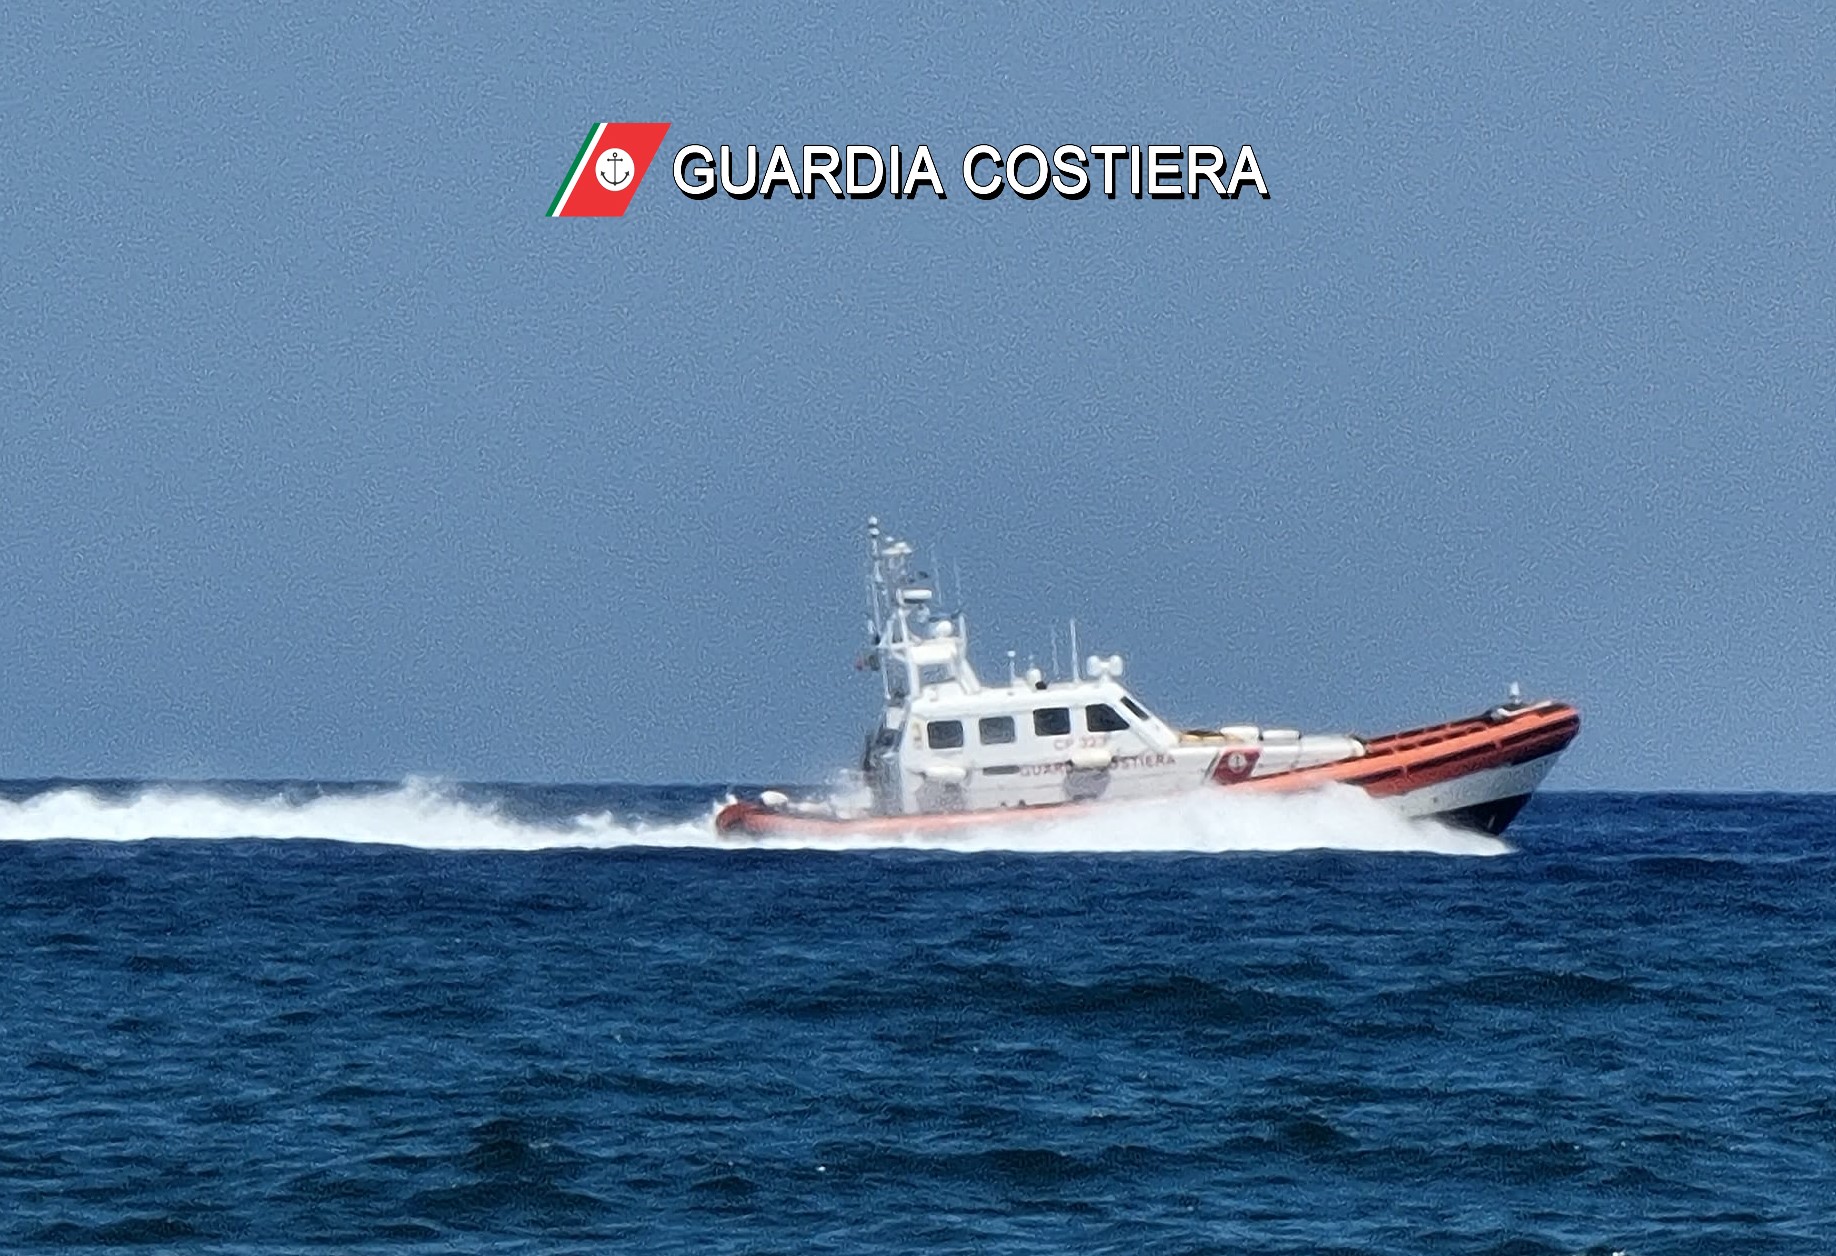 Guardia costiera: 2 soccorsi in mare, 5 persone tratte in salvo